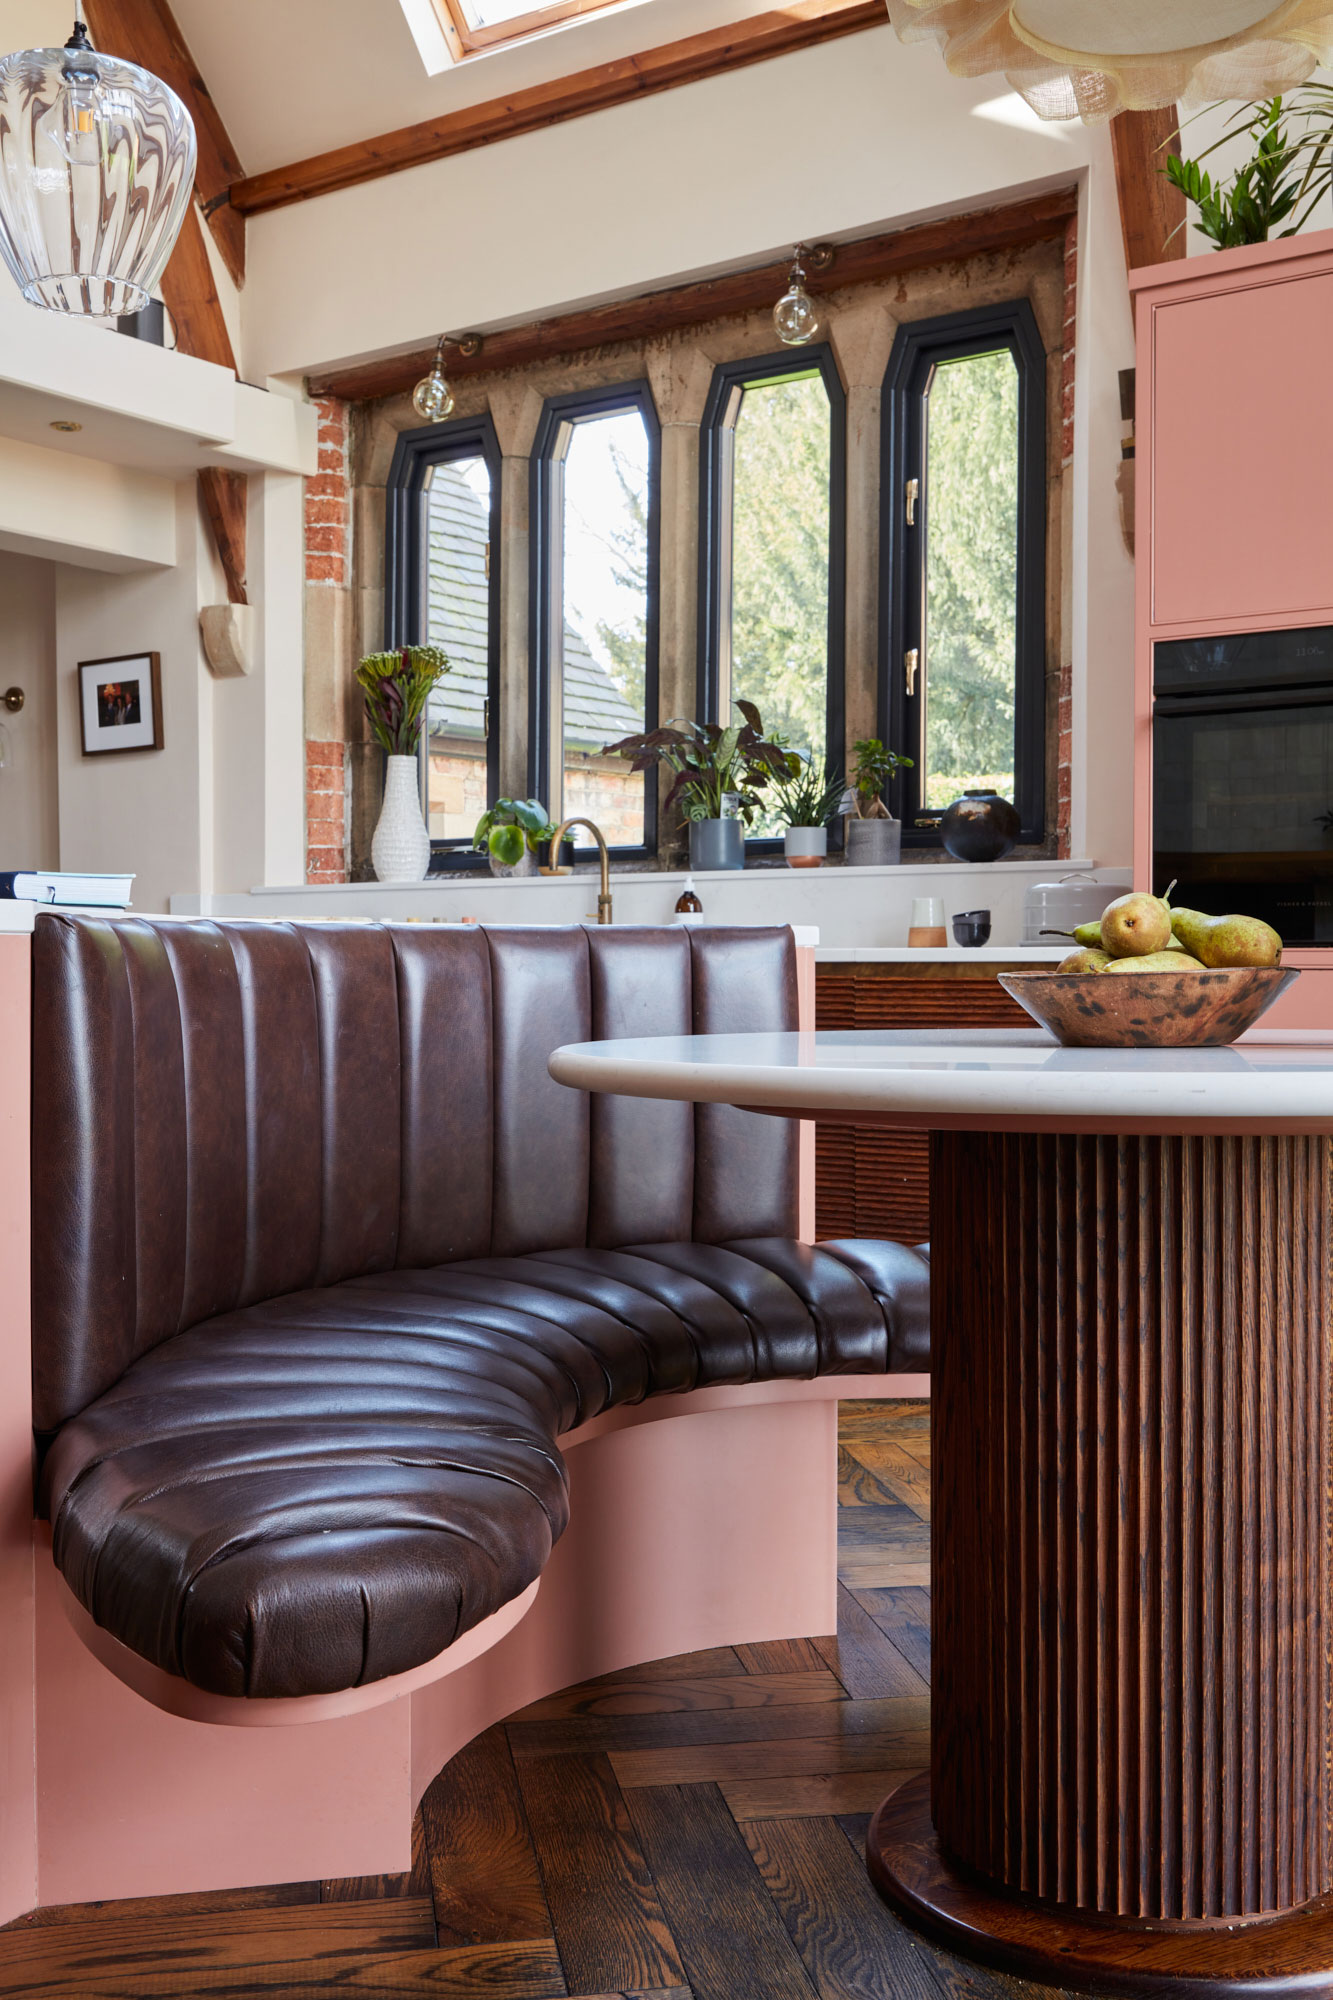 Leather upholstered breakfast bar